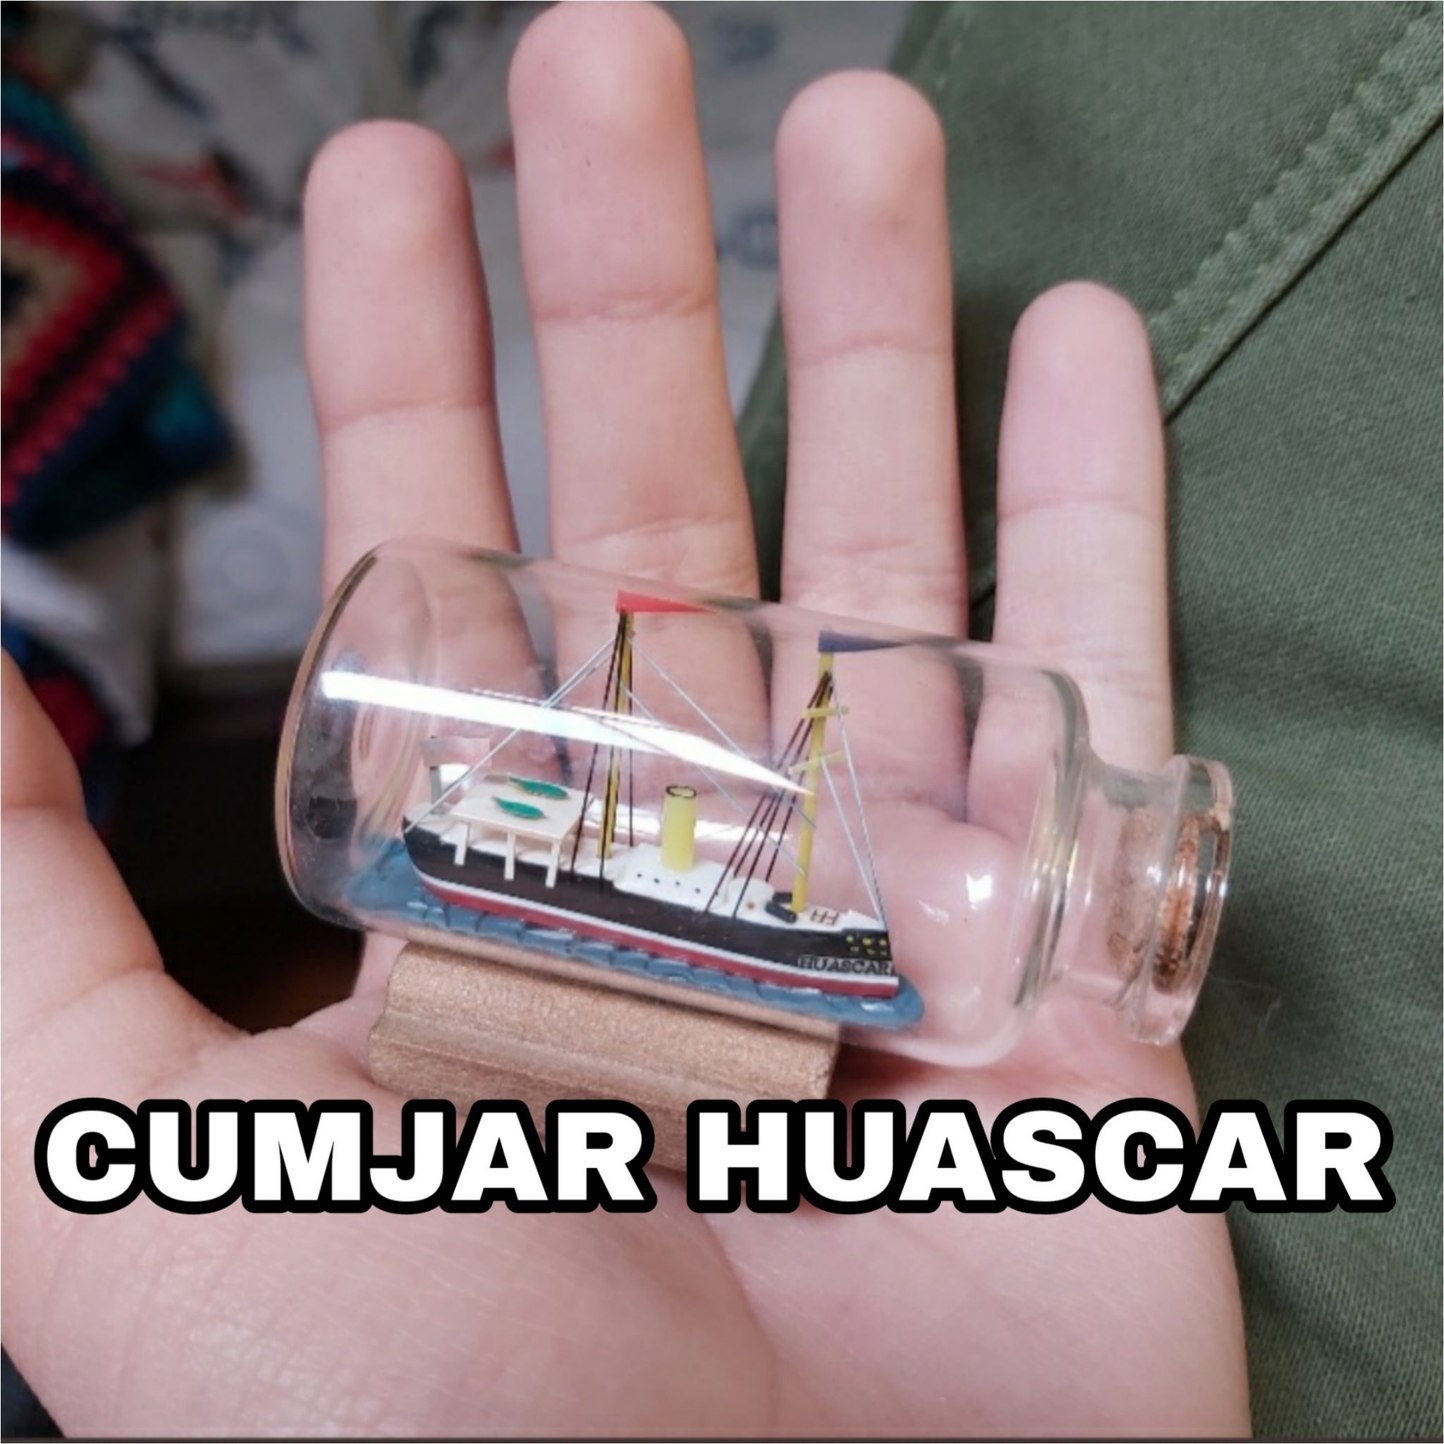 Huascar - meme